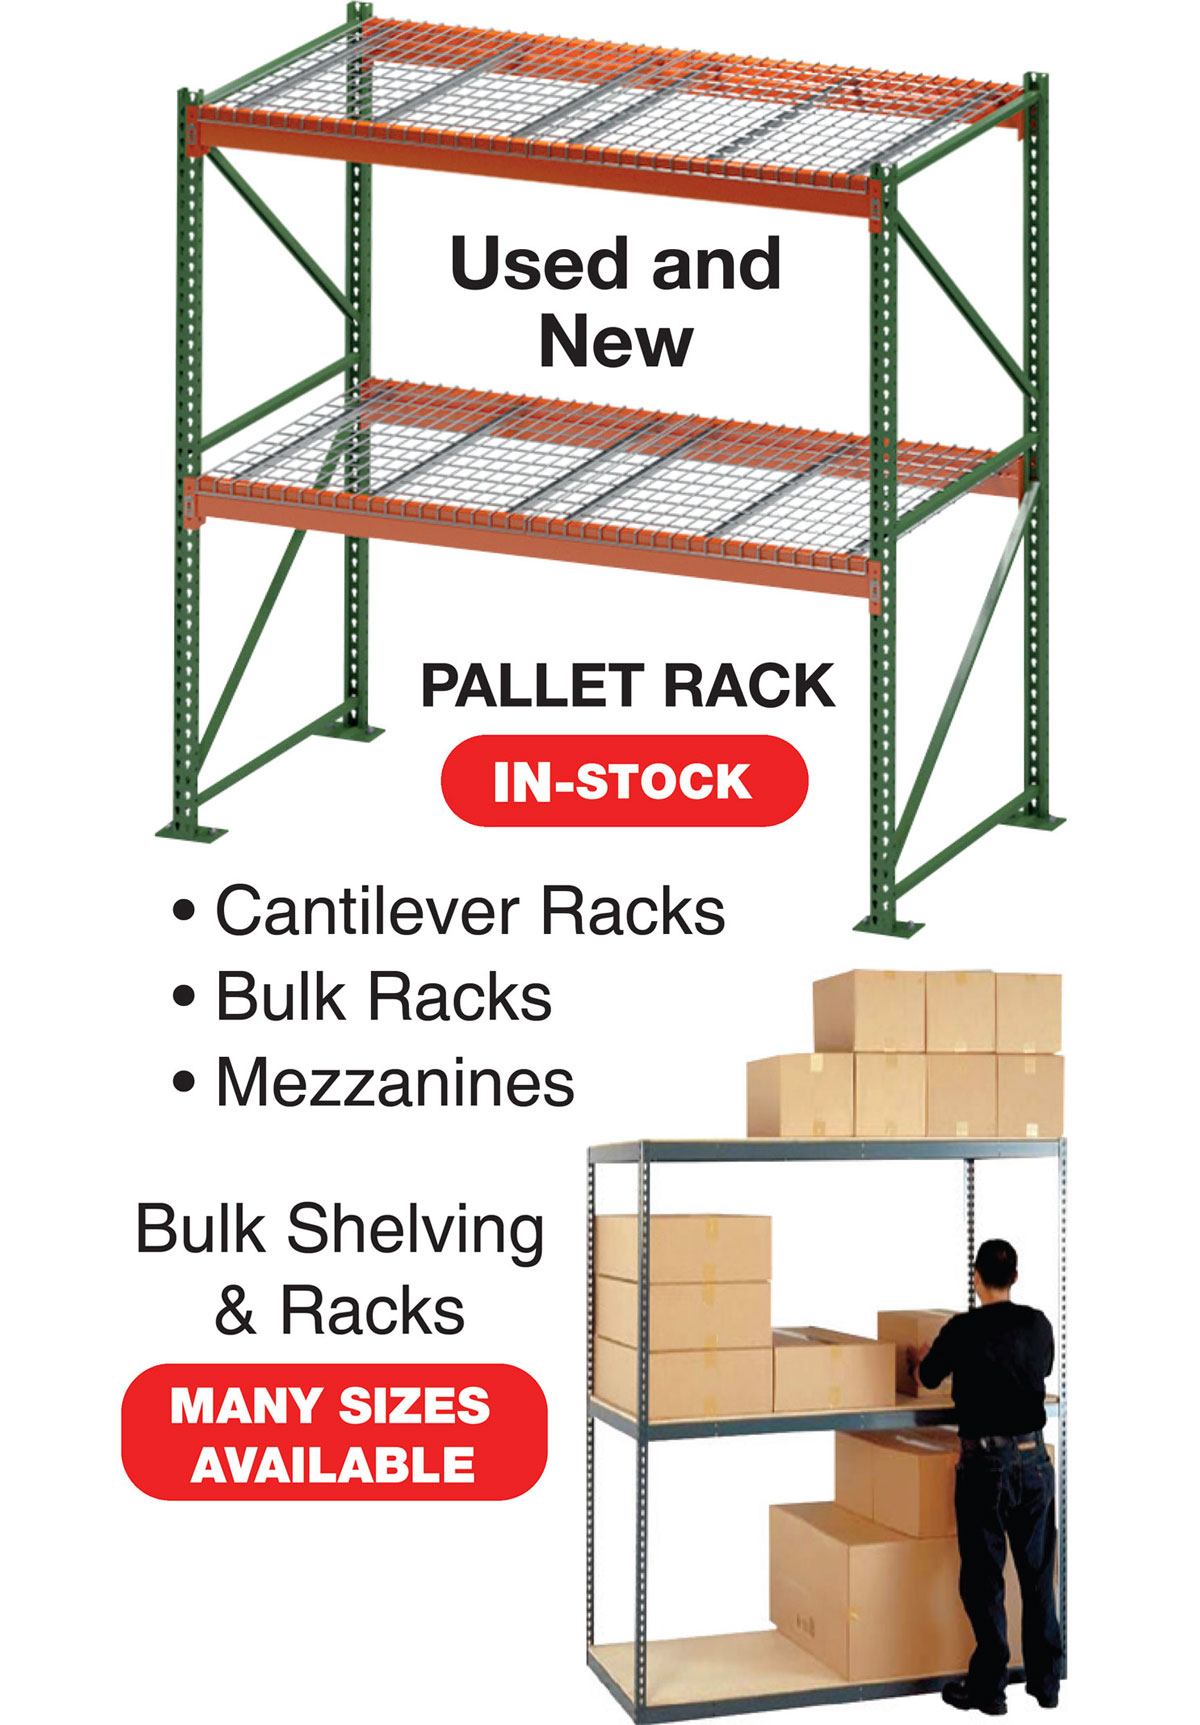 Pallet Rack / Bulk Shelving & Racks